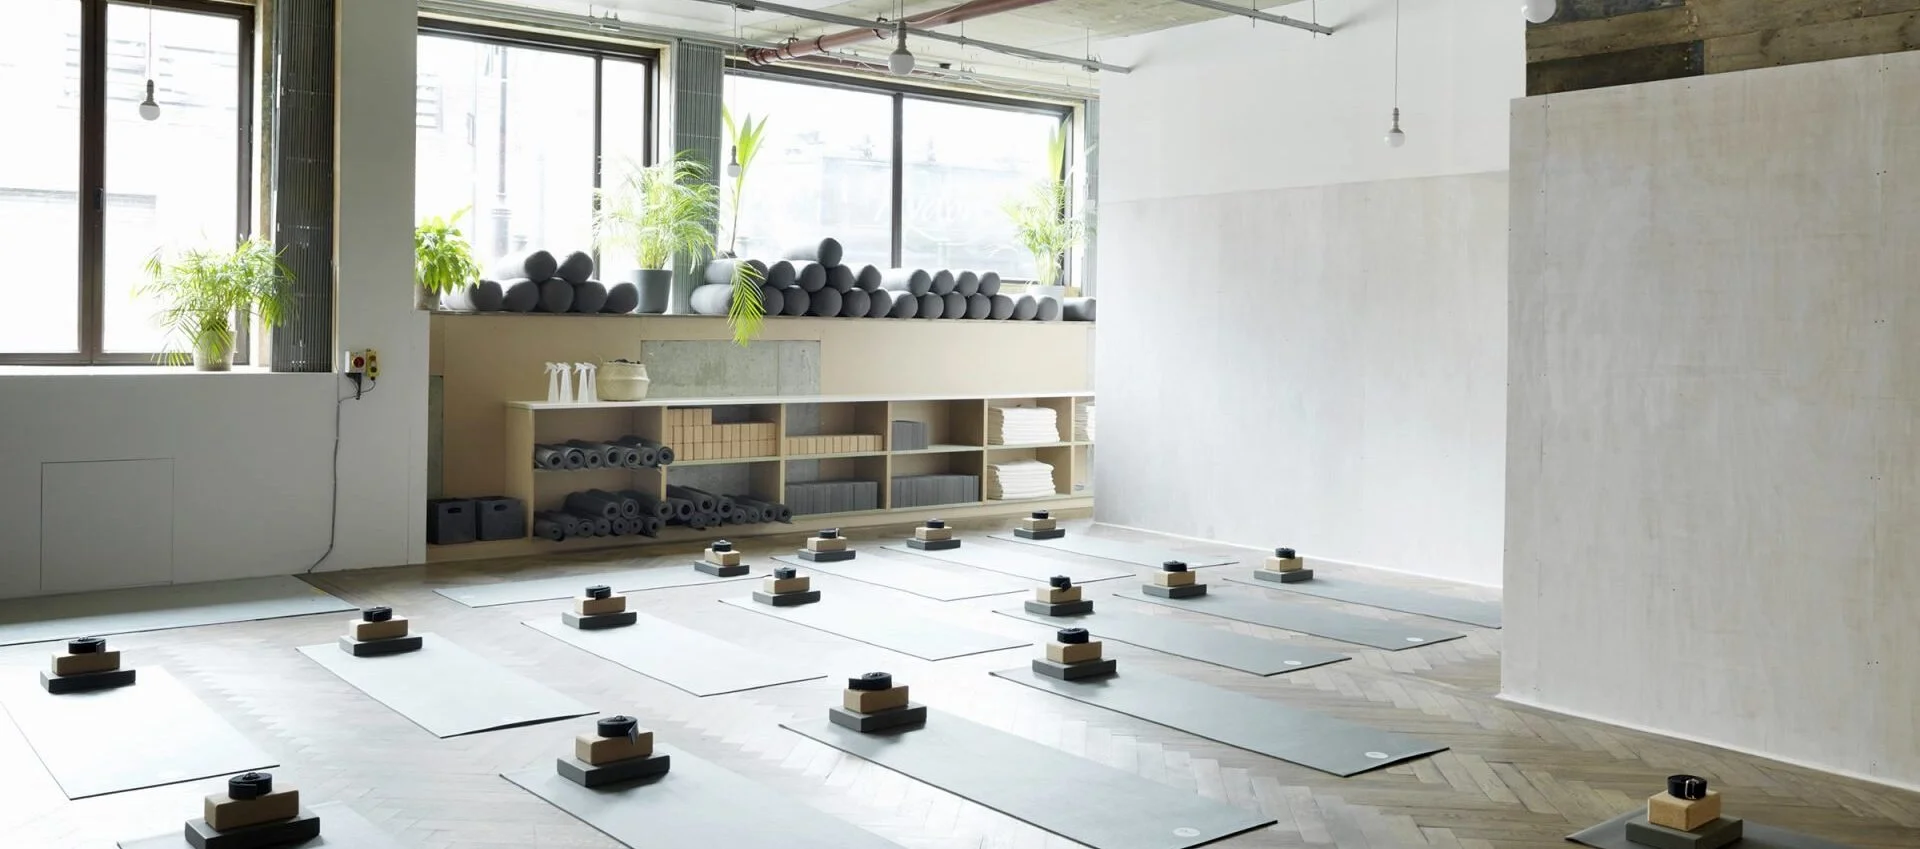 Interior of private home yoga studio, buddhist style